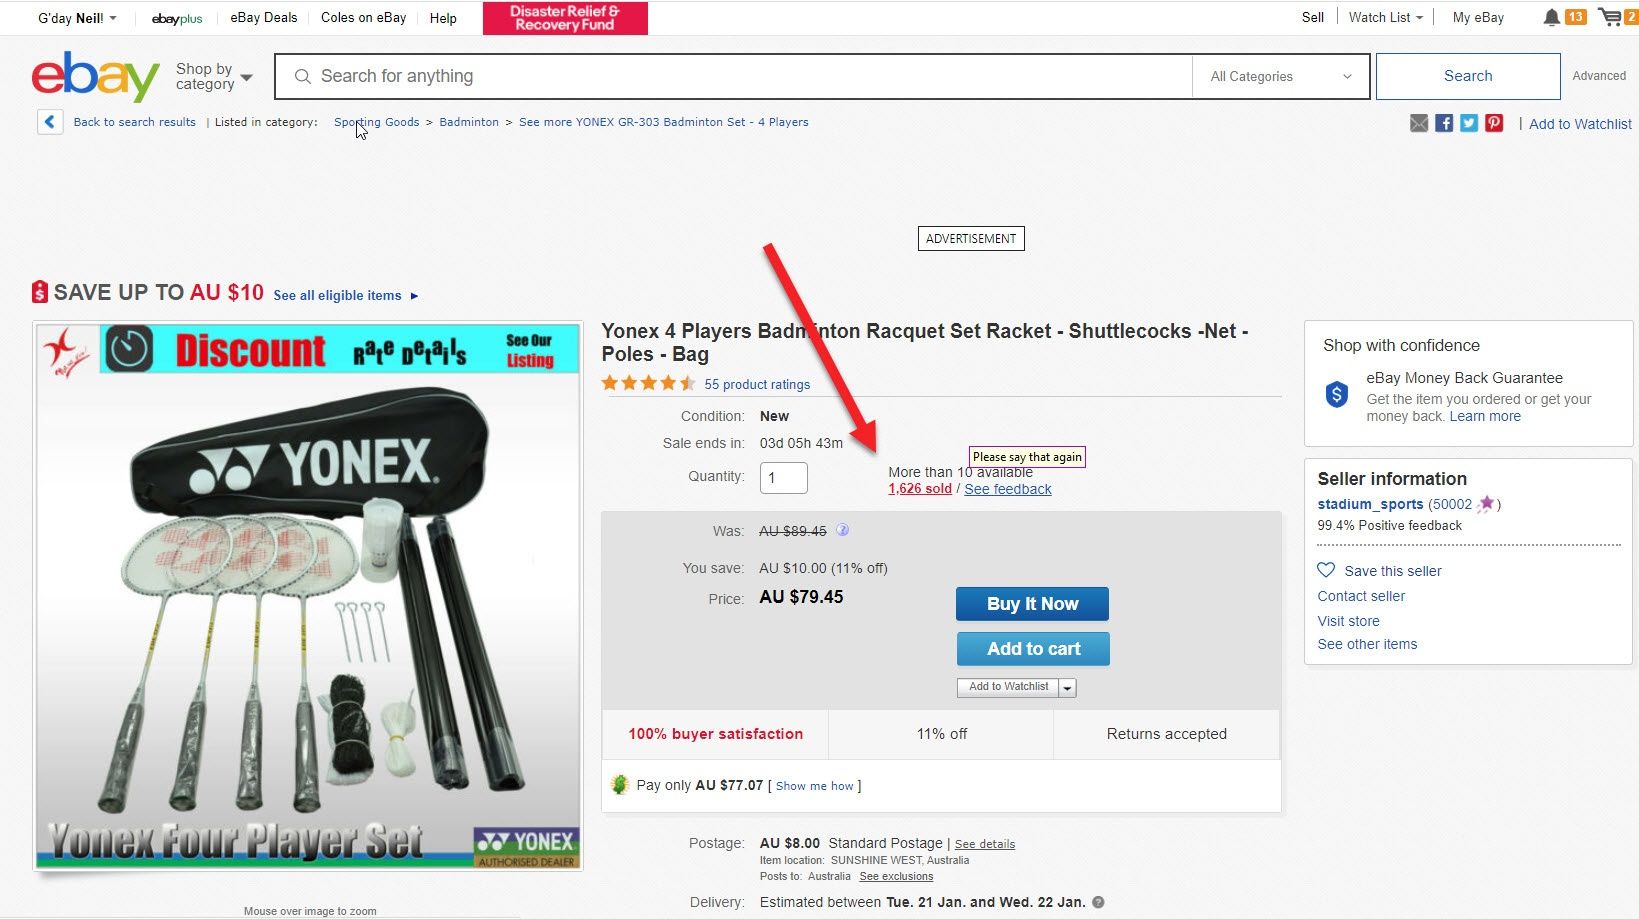 Top Ten Best selling items on ebay